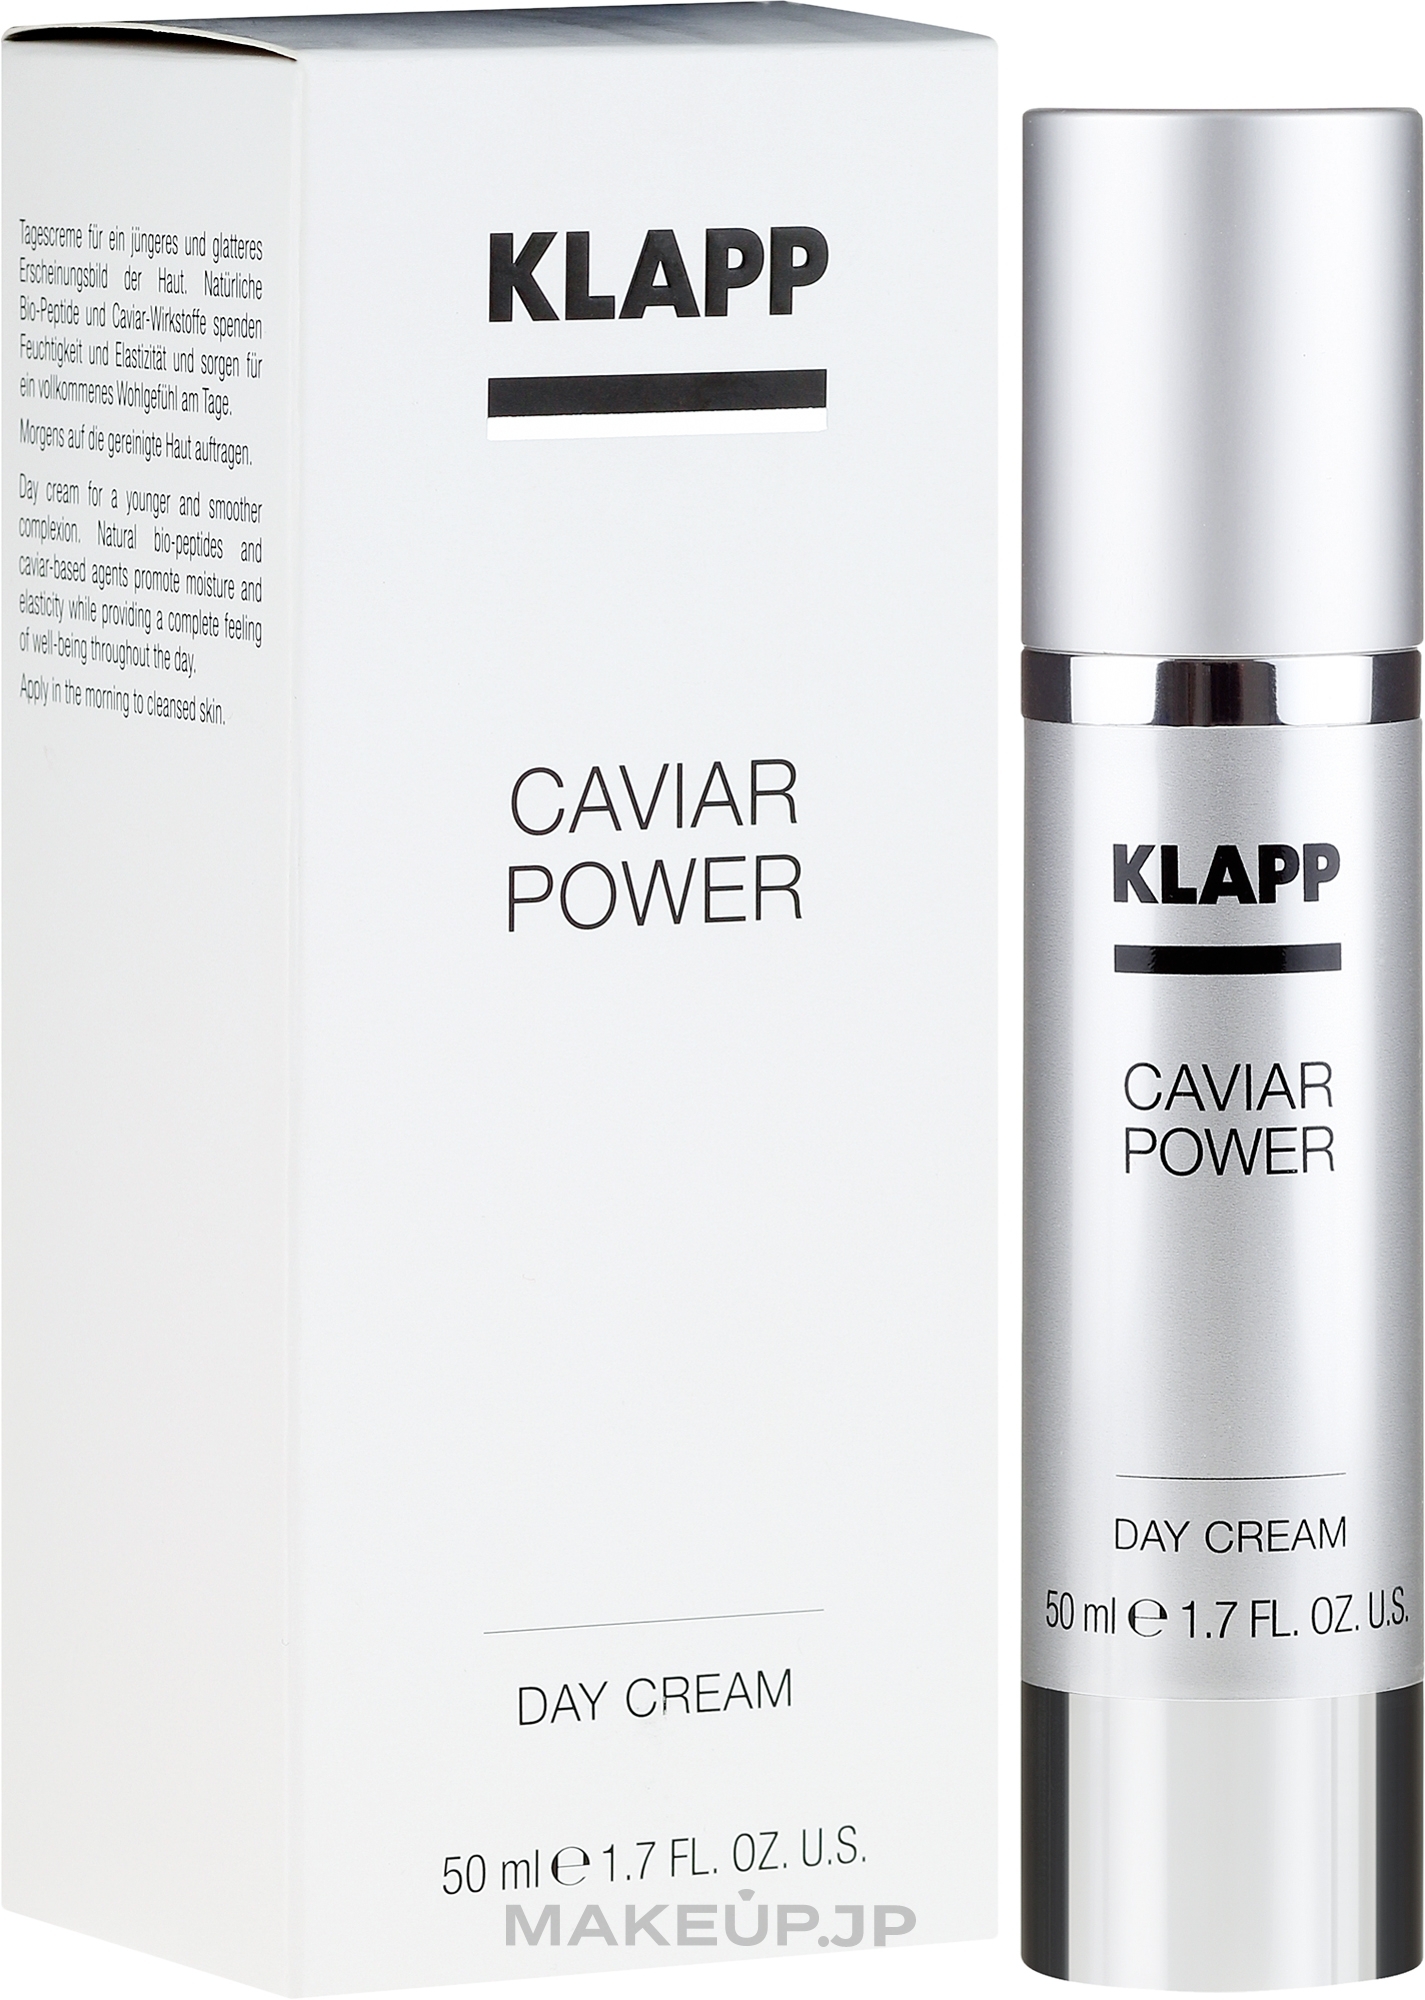 Caviar Power Day Cream - Klapp Caviar Power Day Cream — photo 50 ml